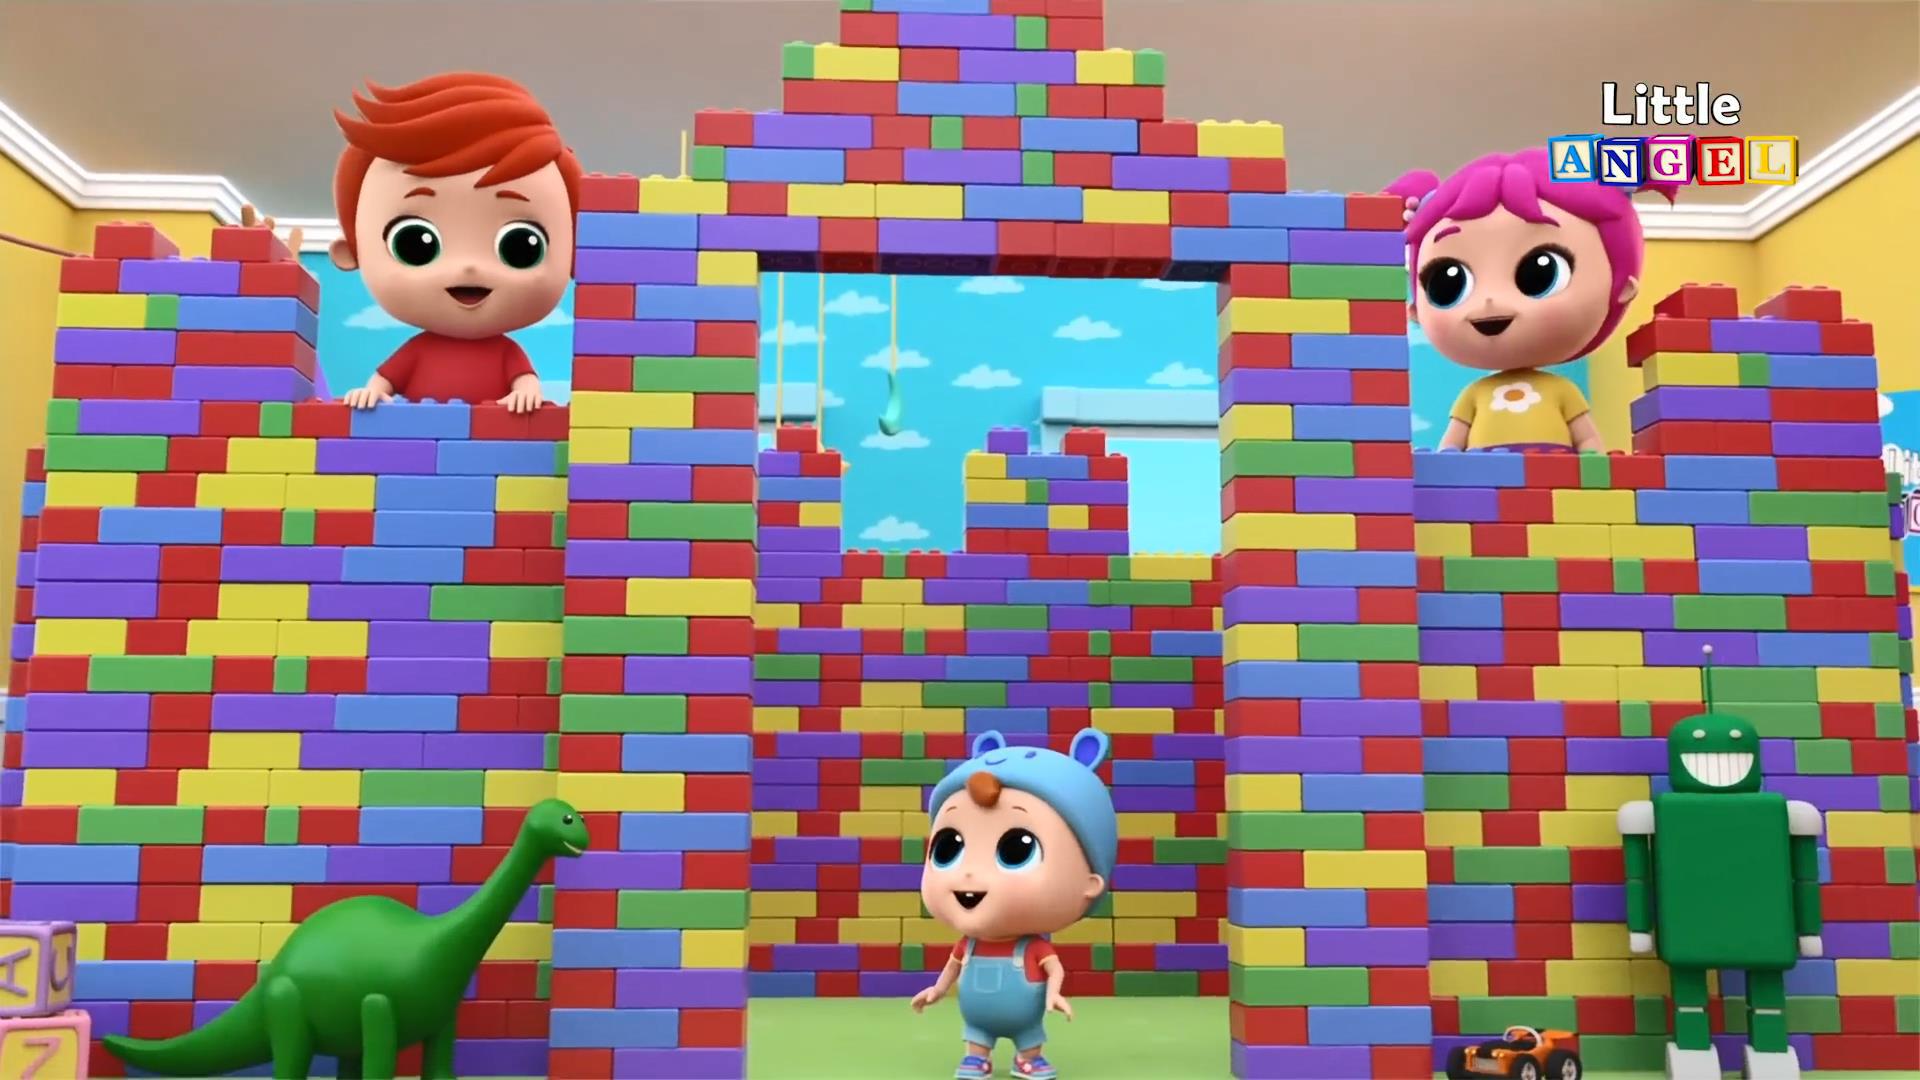 لیتل انجل - Little Angel Playtime with Building Blocks